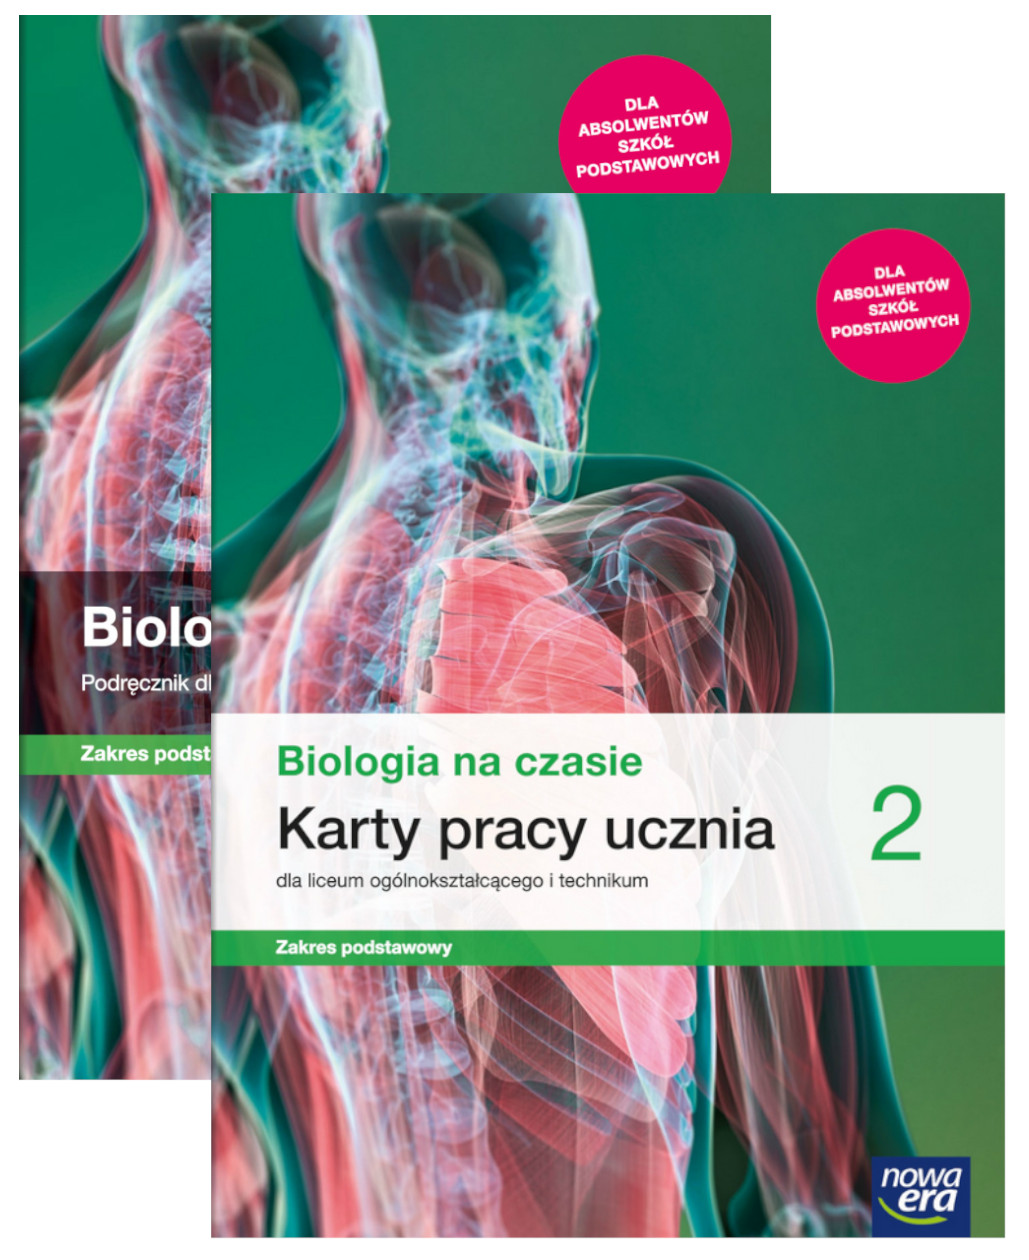 Biologia Na Czasie 2 Nowa Era Pakiet: Biologia na czasie 2. Podręcznik oraz karty pracy ucznia dla